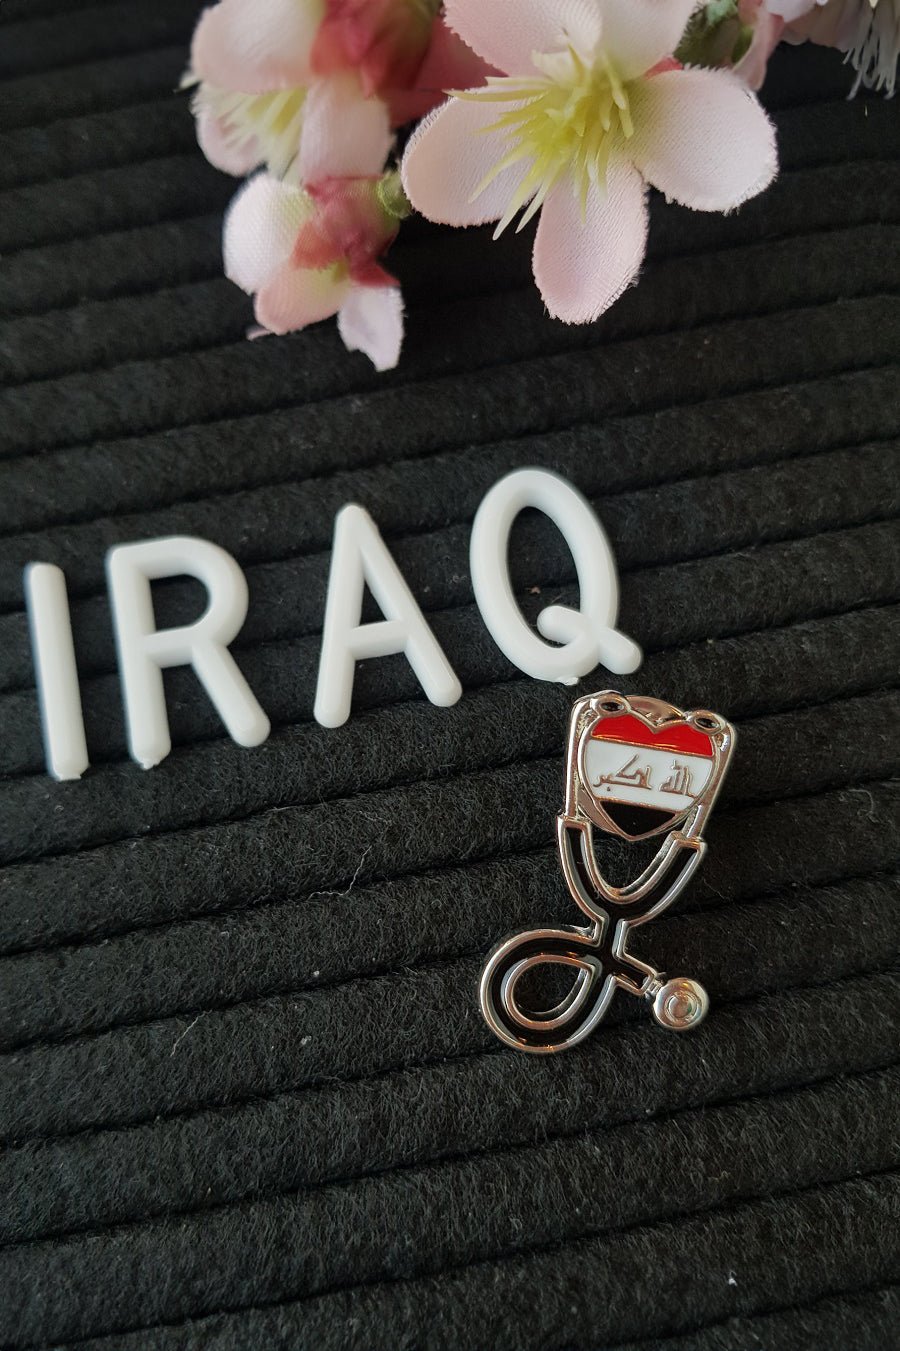 Iraq Flag Pin